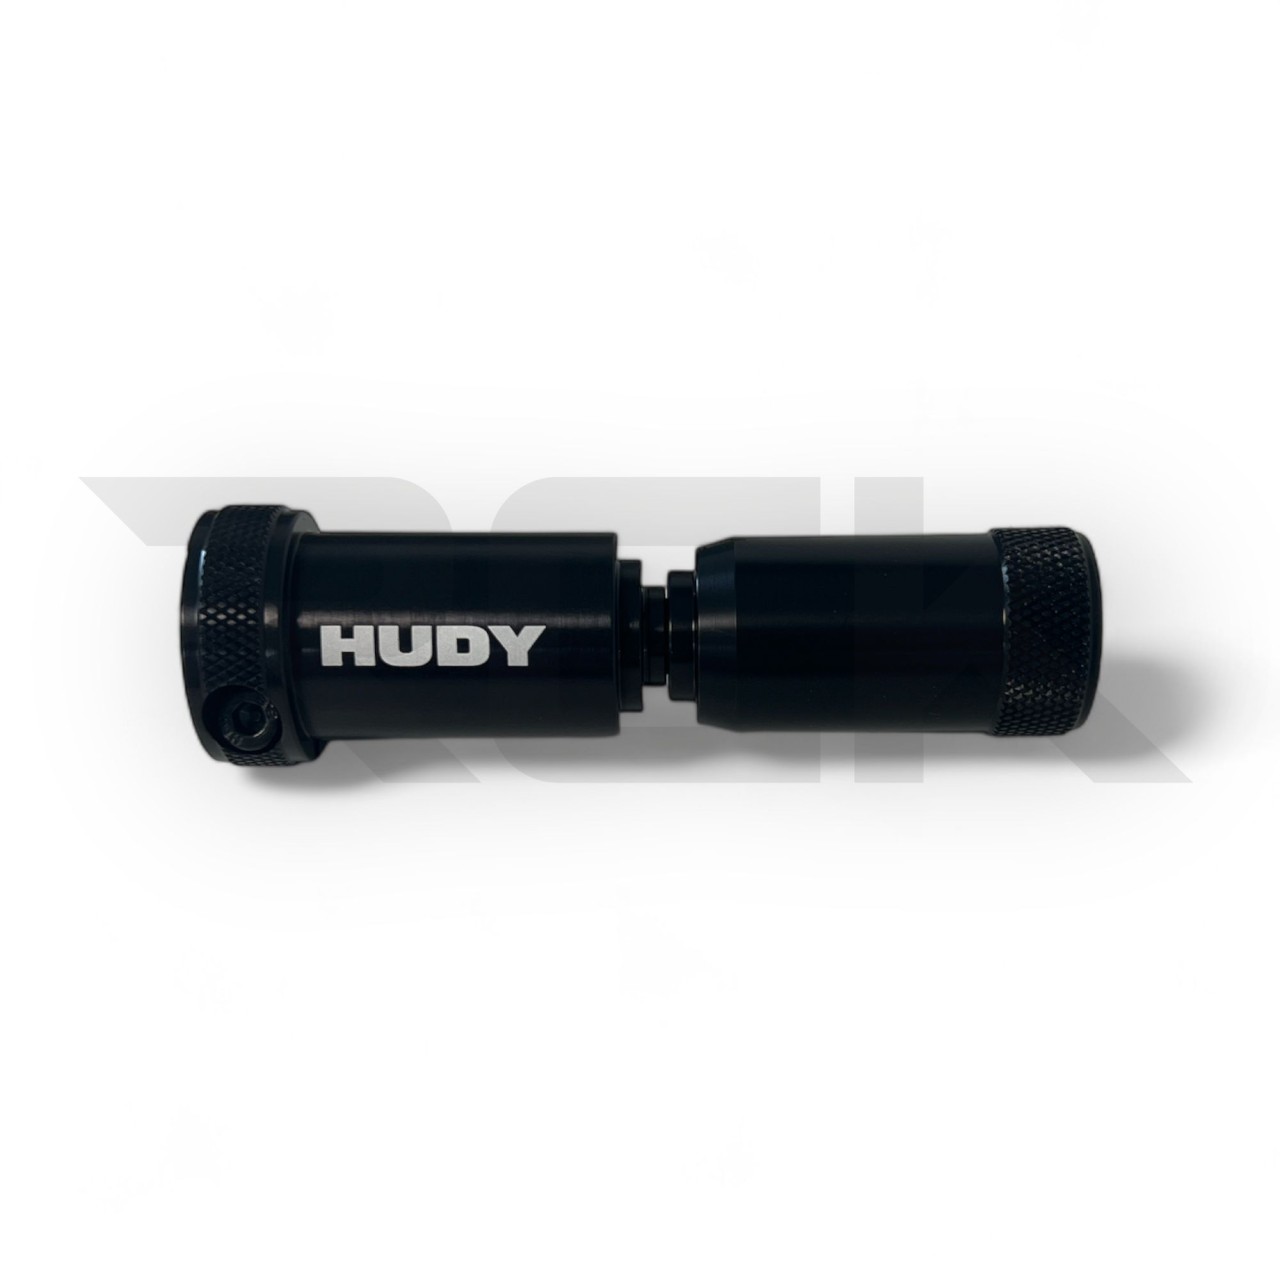 HUDY 102375 - Adapter für Reifenschleifmaschine 1/10 / 1/12 PanCar / Pro 10